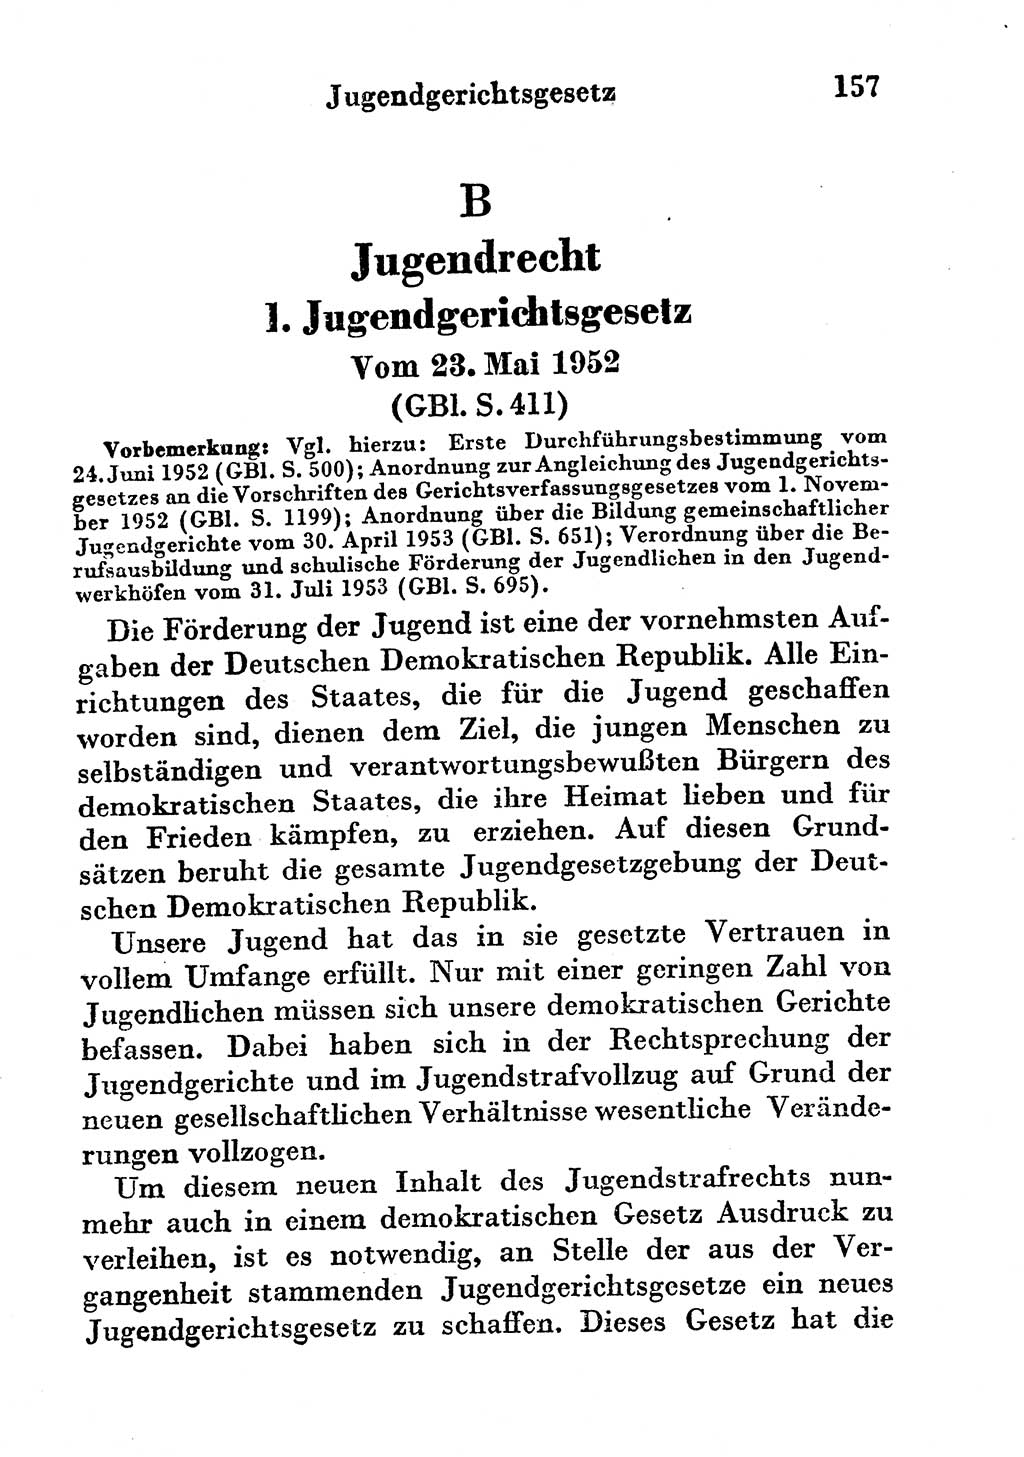 Strafgesetzbuch (StGB) und andere Strafgesetze [Deutsche Demokratische Republik (DDR)] 1956, Seite 157 (StGB Strafges. DDR 1956, S. 157)